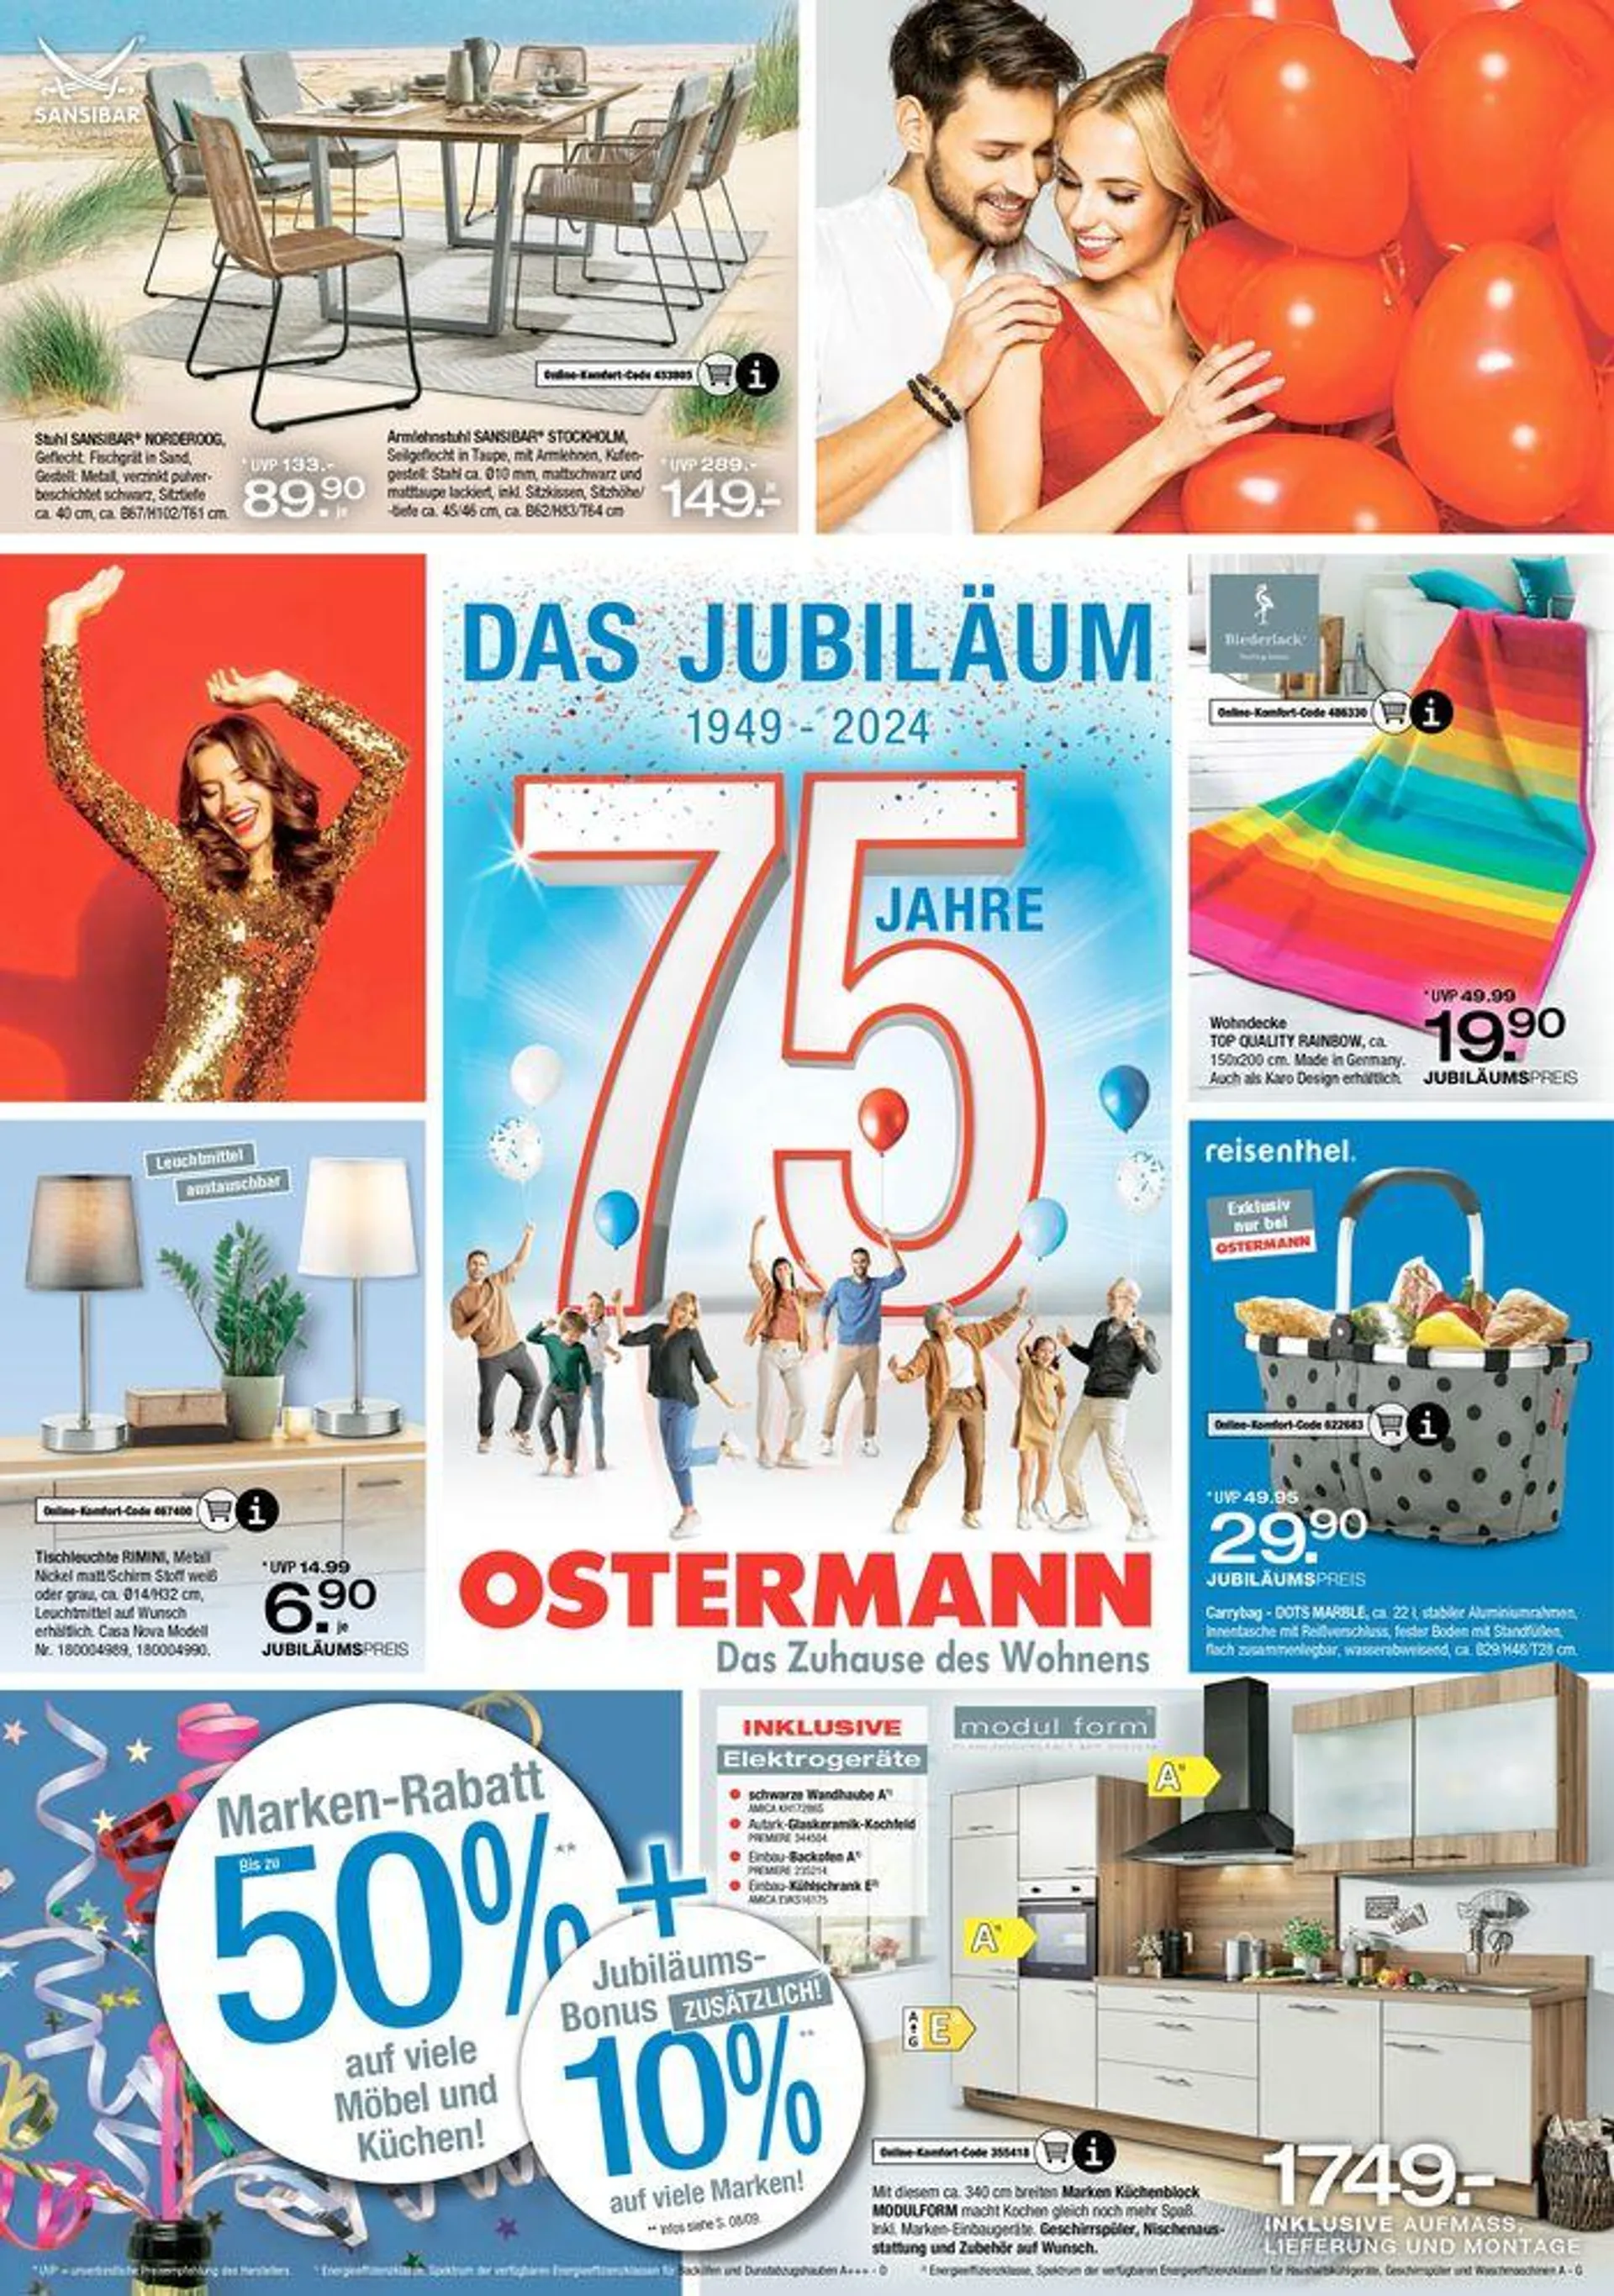 Das Jubiläum - 75 Jahre OSTERMANN  - 1